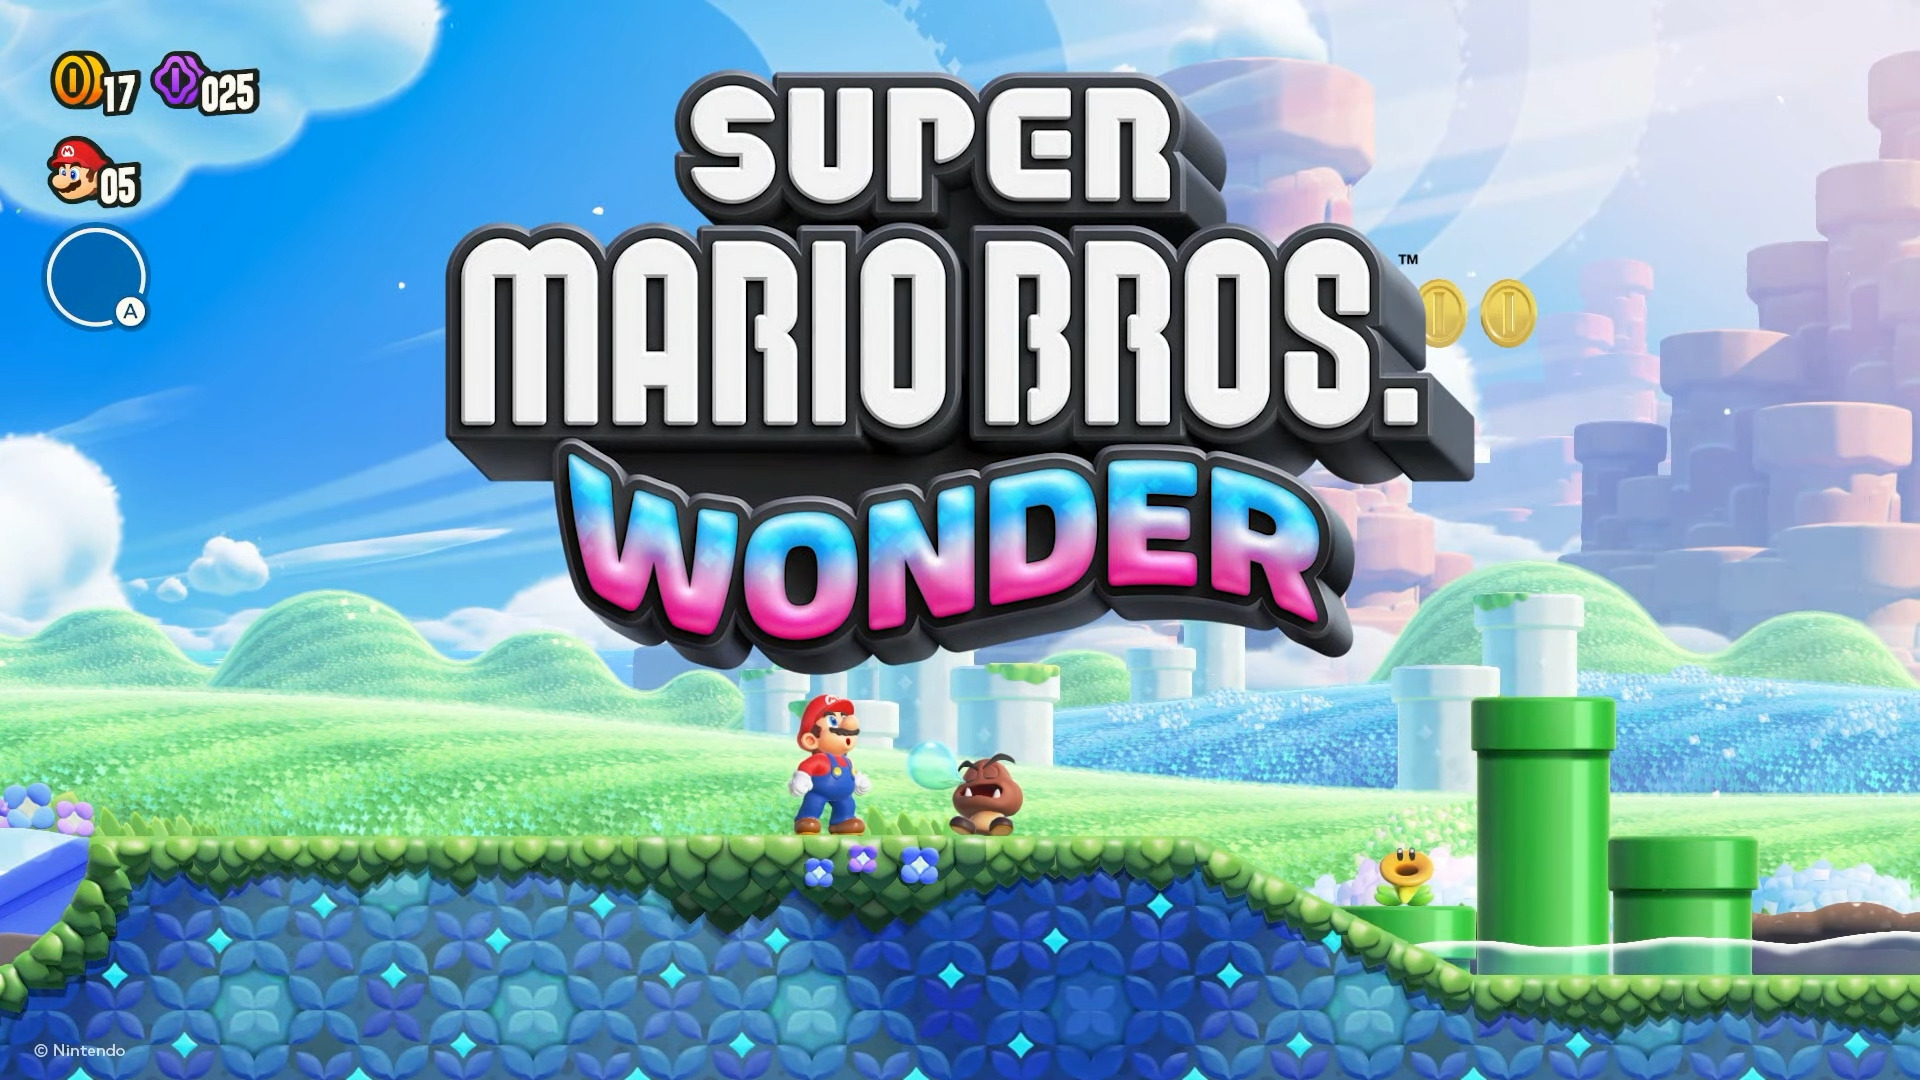 Super Mario Bros. Wonder (Switch) à 44,16€